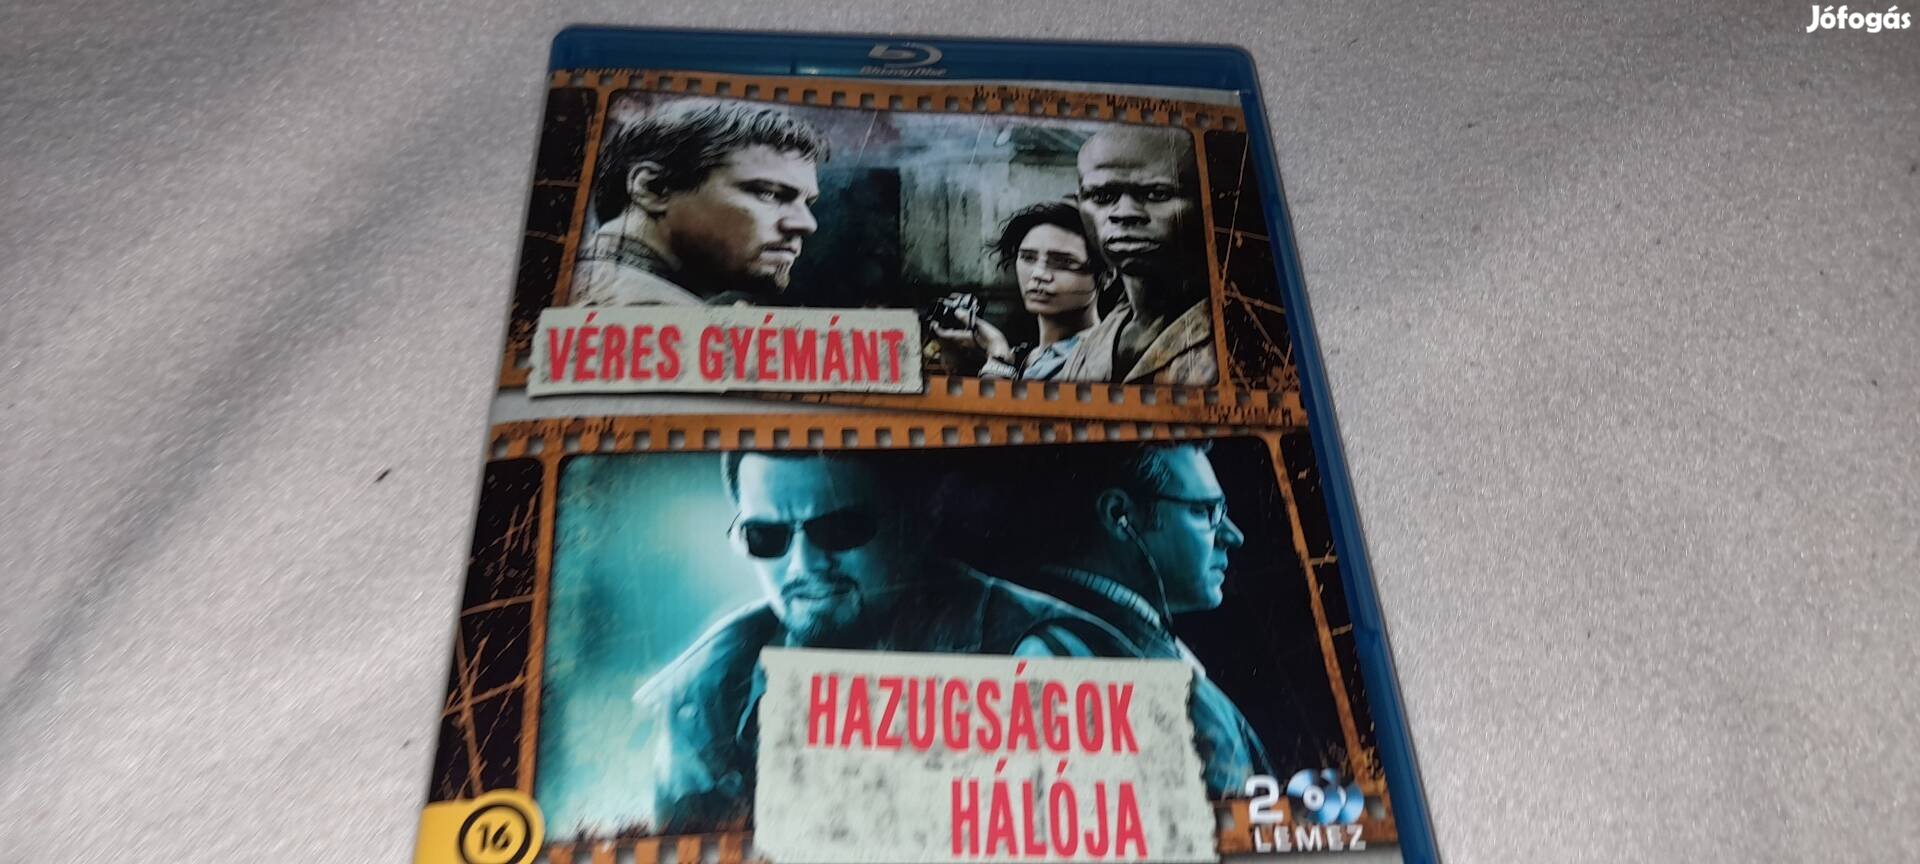 Véres Gyémánt / Hazugságok Hálója  Magyar Szinkronos Blu-ray 